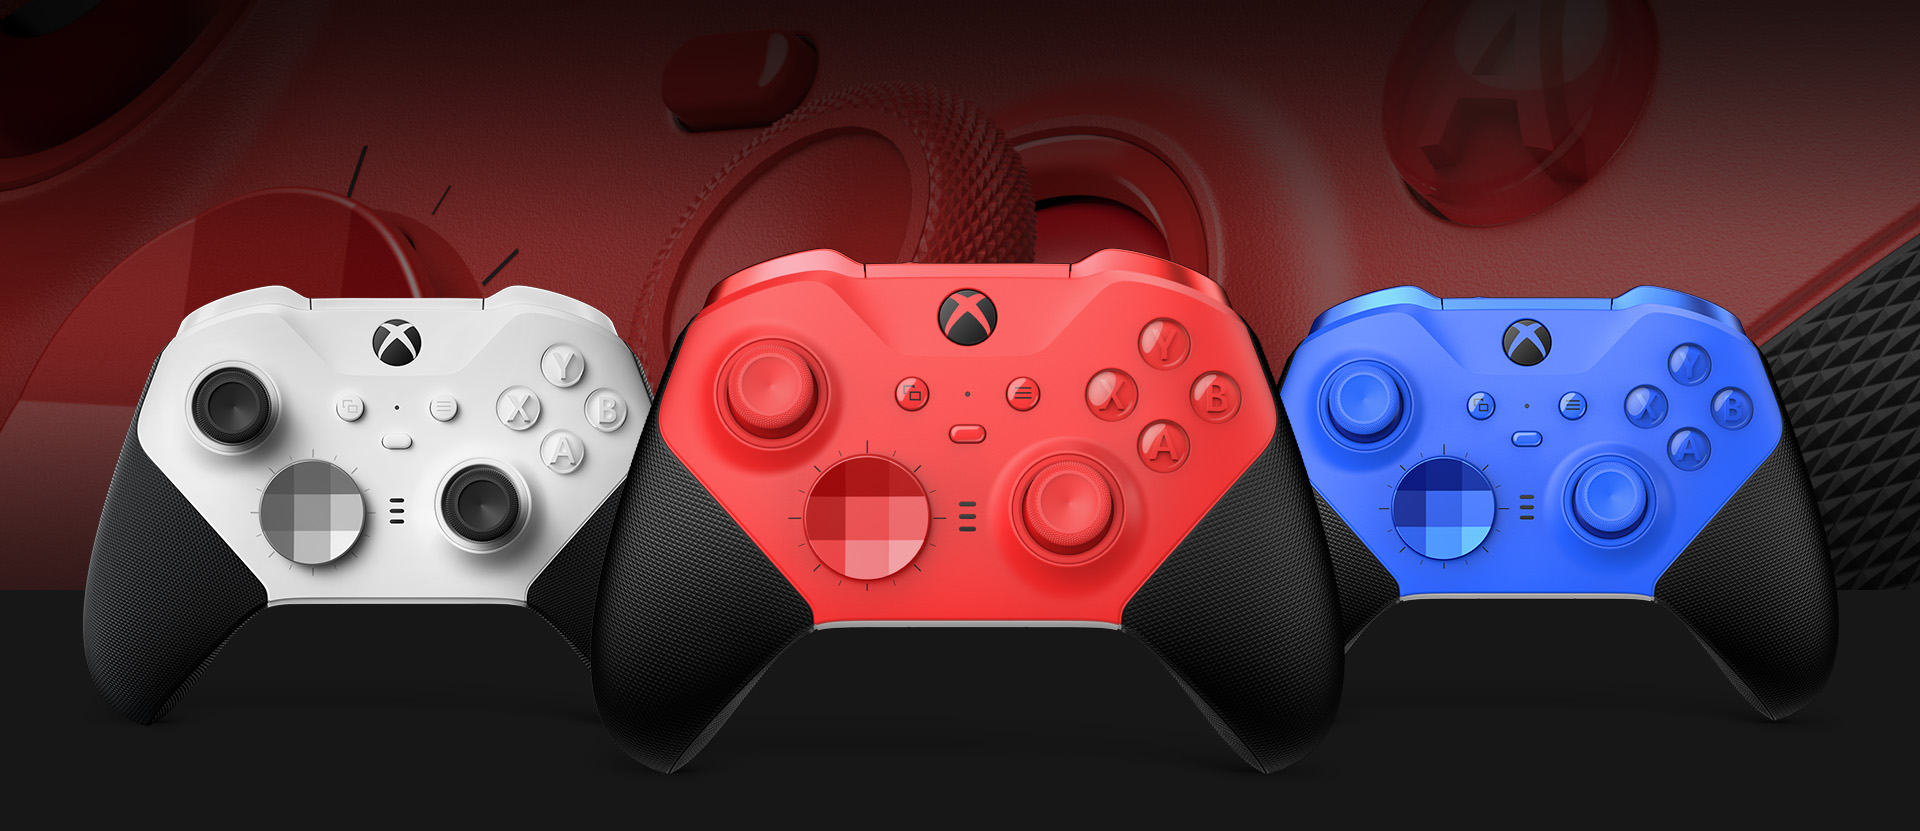 다른 색 옵션이 옆에 표시된 Xbox Elite 무선 컨트롤러 Series 2 - 코어(빨강)를 앞에서 본 모습. 배경에는 클로즈업된 컨트롤러 엄지스틱과 텍스처형 그립이 보입니다.